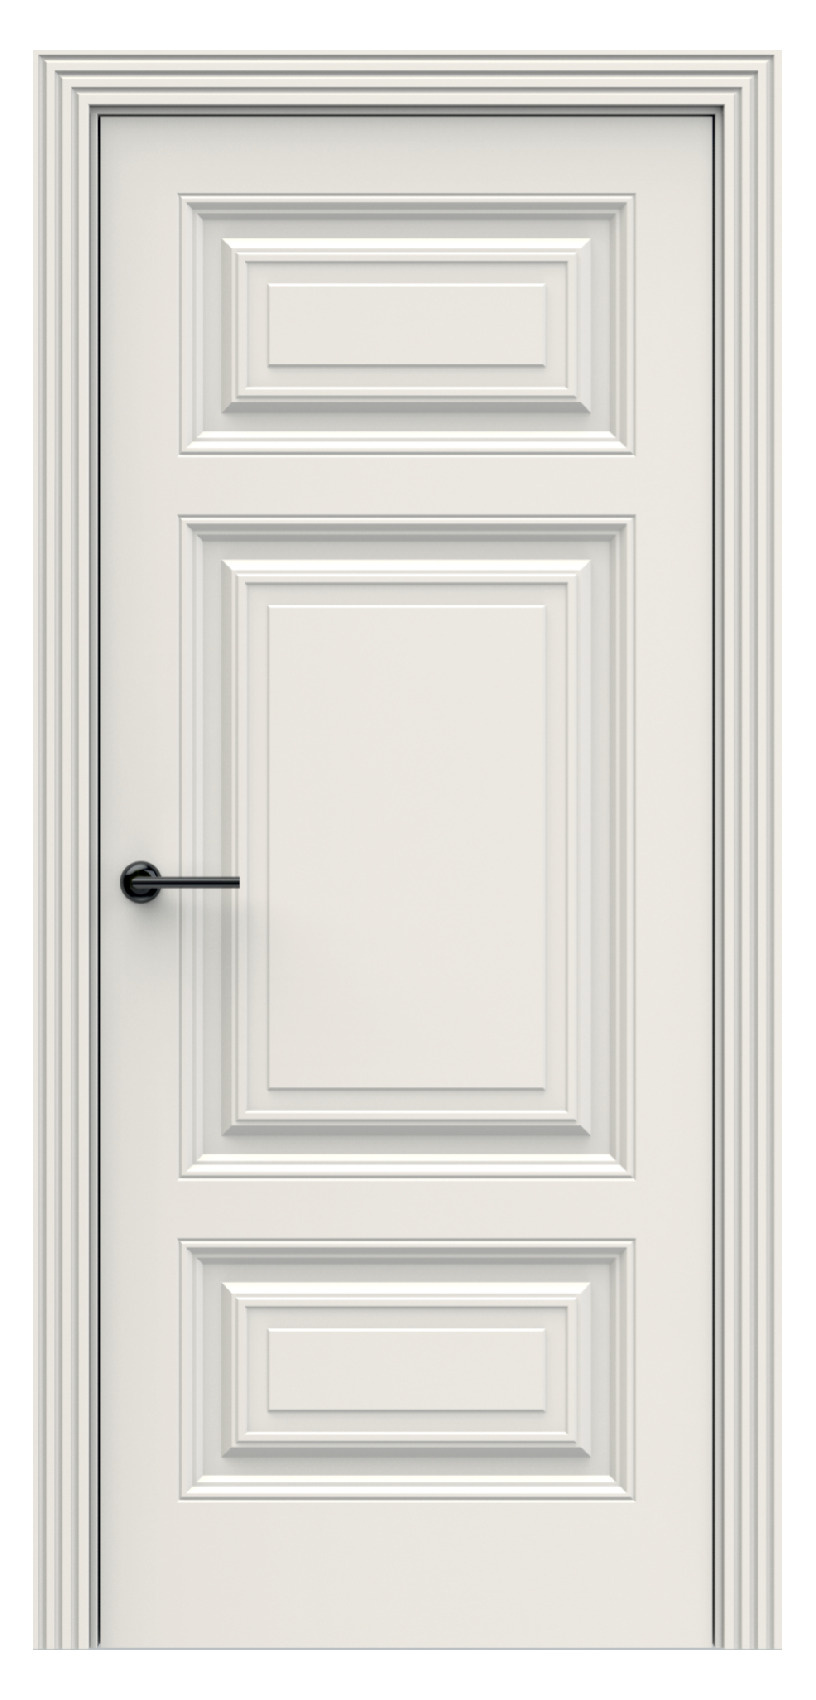 Questdoors Межкомнатная дверь QBR14, арт. 17927 - фото №1